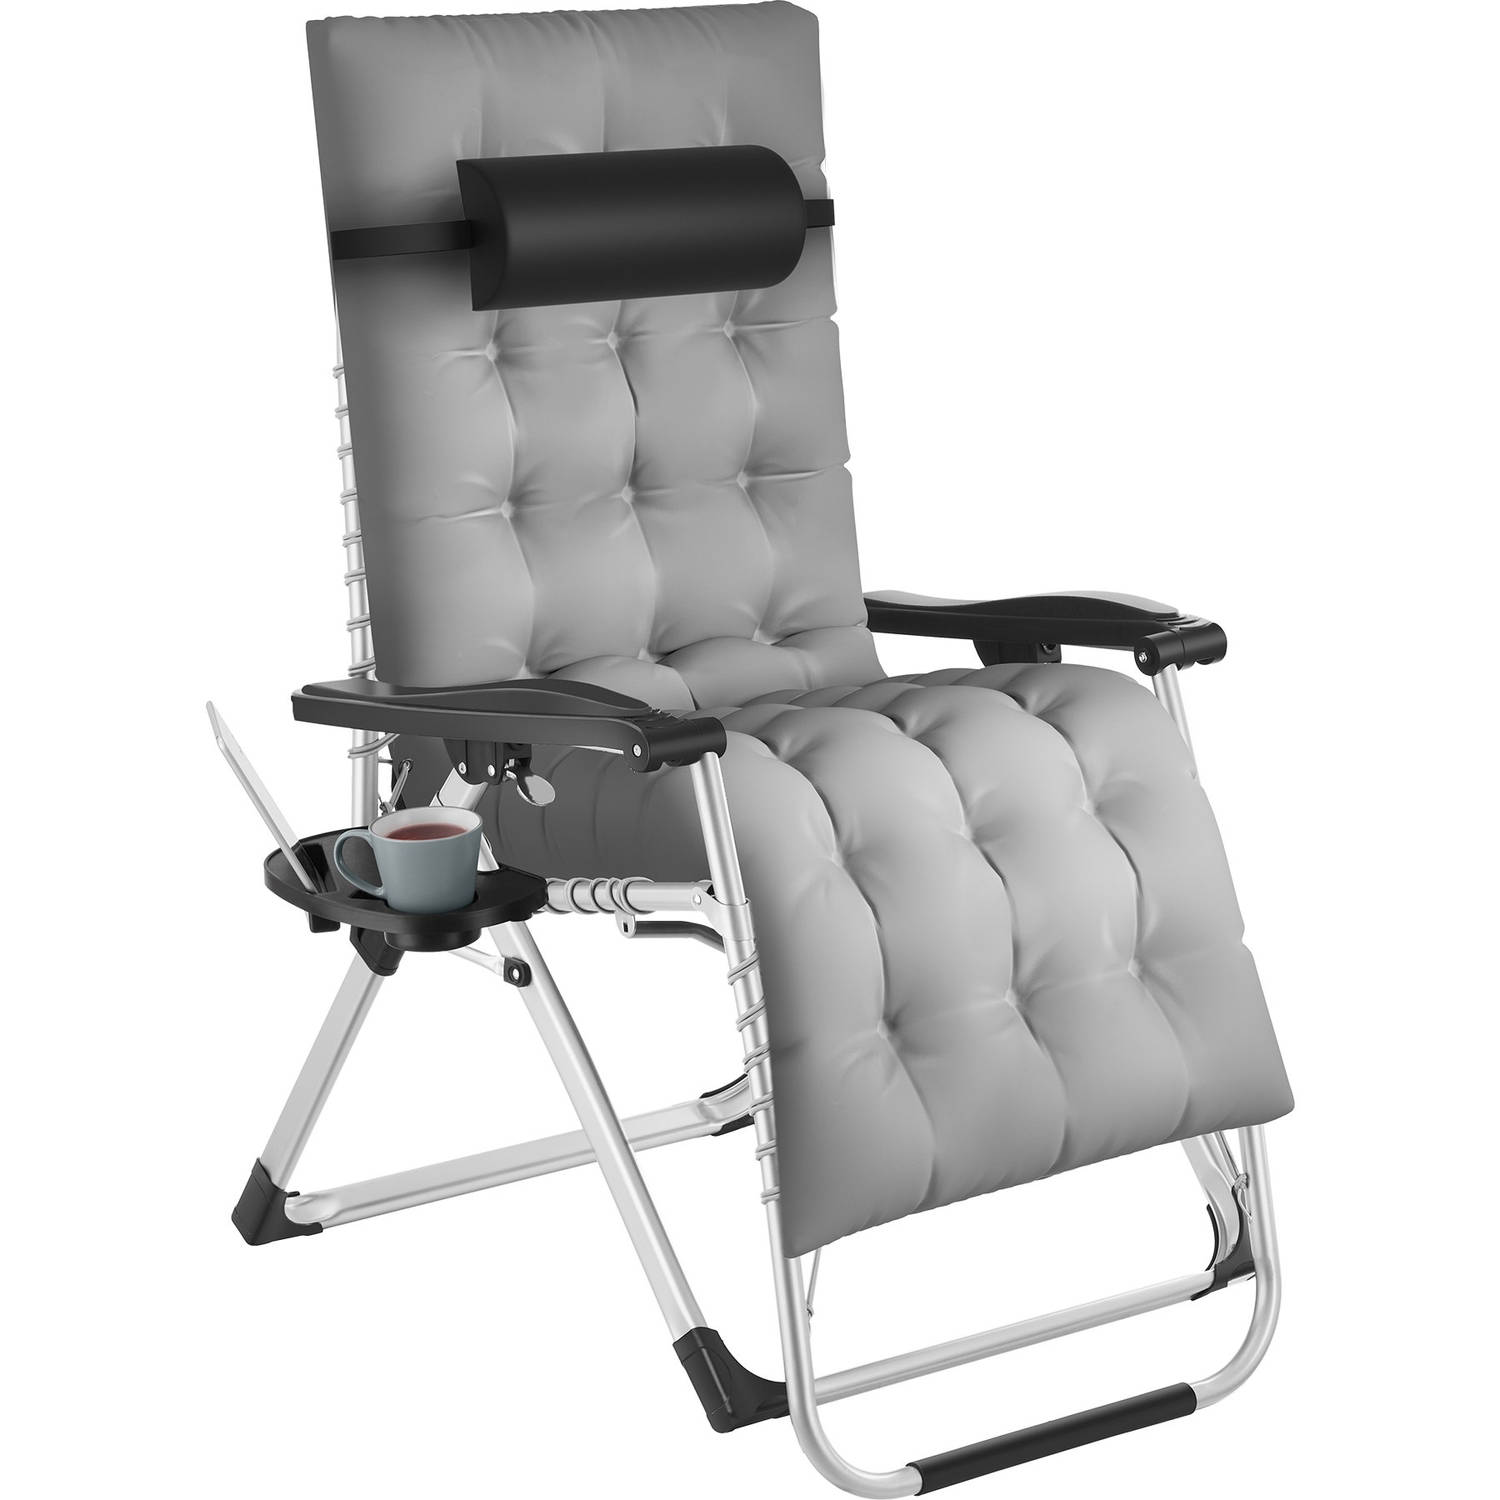 tectake® - ligbed opklapbare ligstoel, traploos verstelbaar, ligstoel extra dik kussen, belastbaar tot 200 kg (grijs)